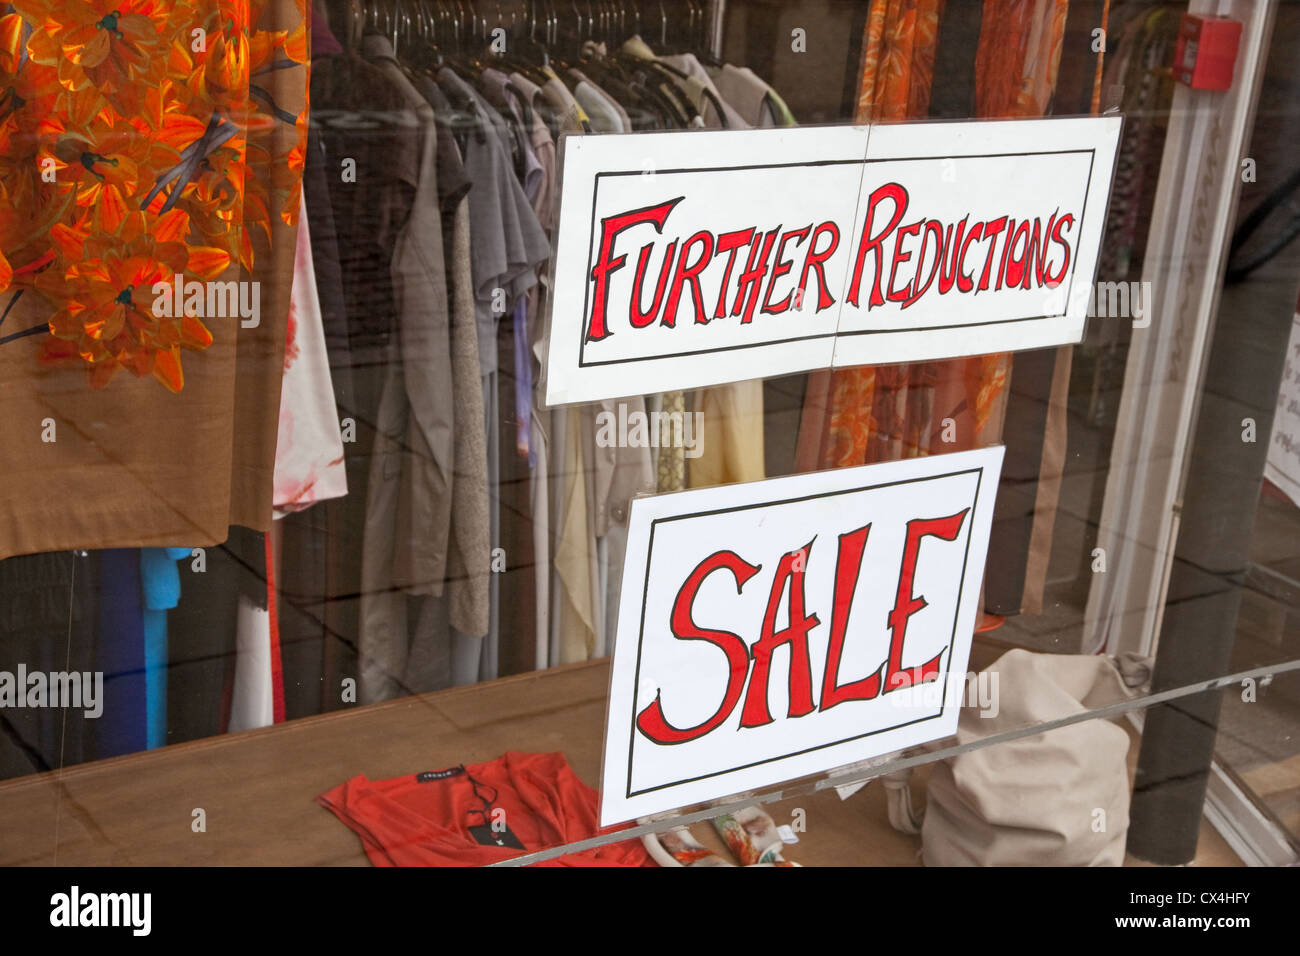 Nuevas reducciones, la venta de avisos en ventana de la tienda de ropa. Foto de stock